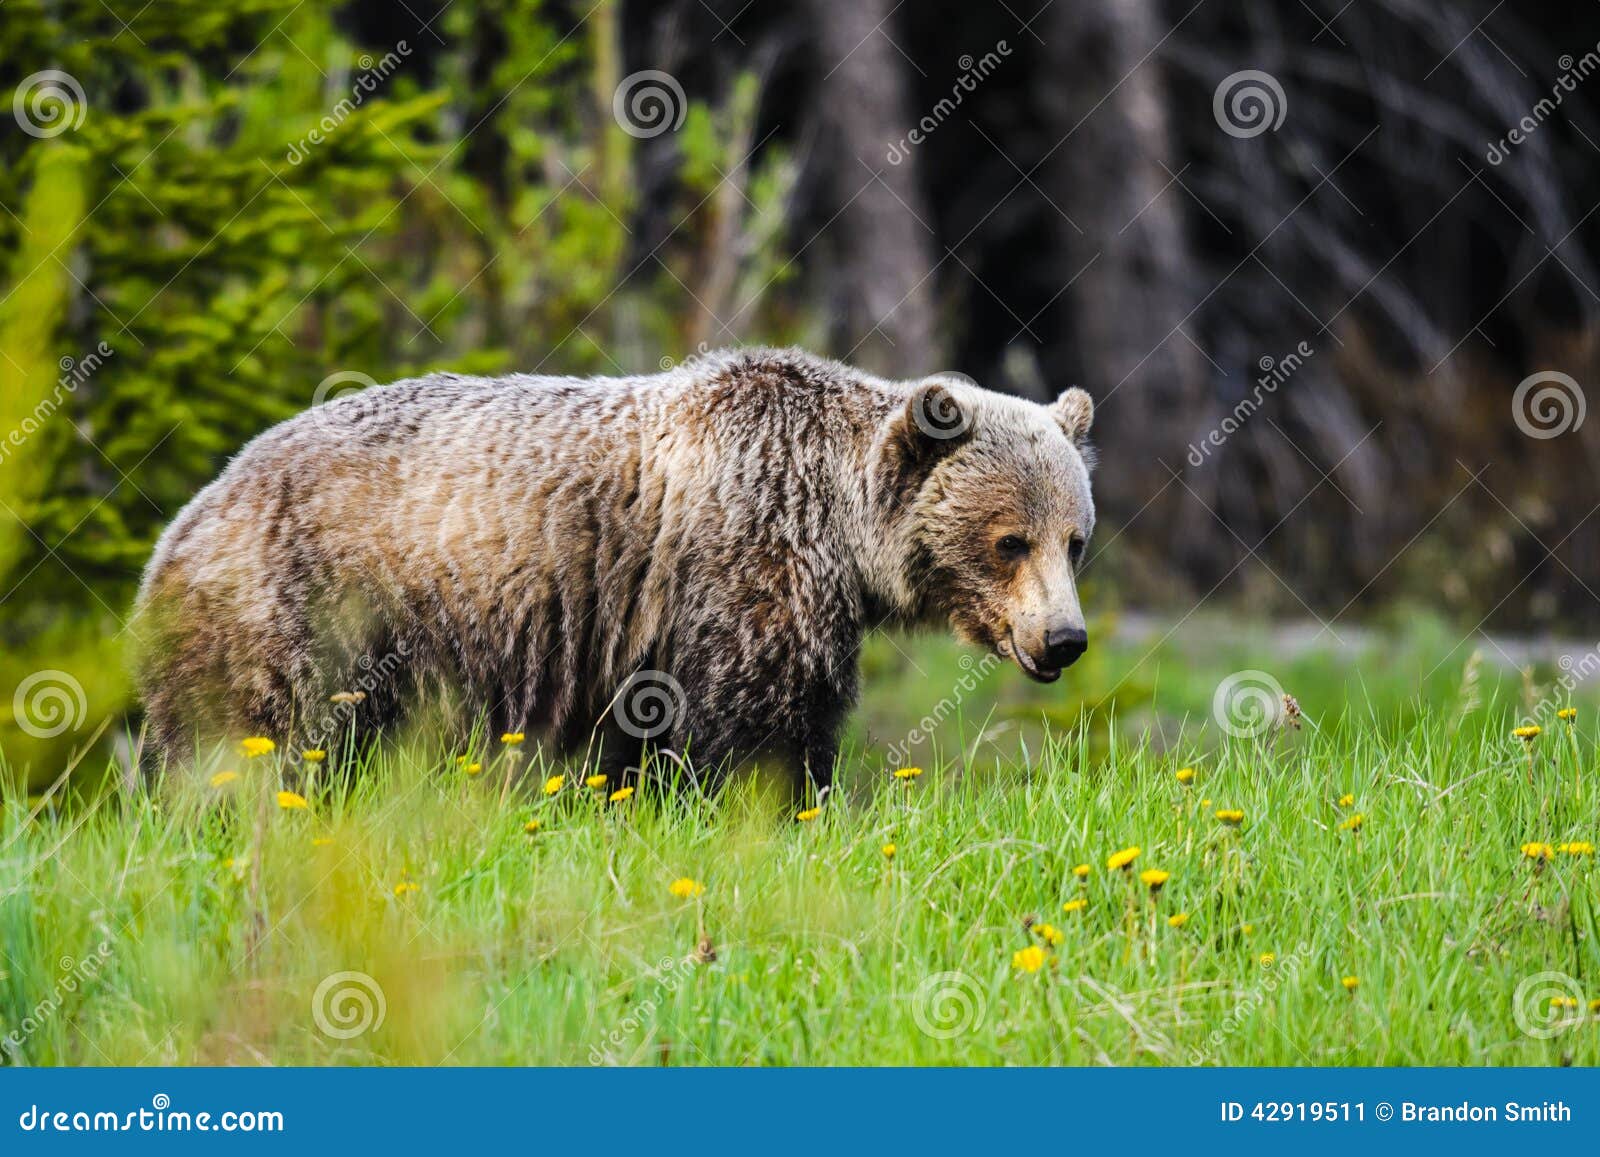 熊北美灰熊 库存照片. 图片 包括有 野生生物, 飞机场, 国家, 敲打, 北美灰熊, 登纳, 格里兹, 公园 - 6263514